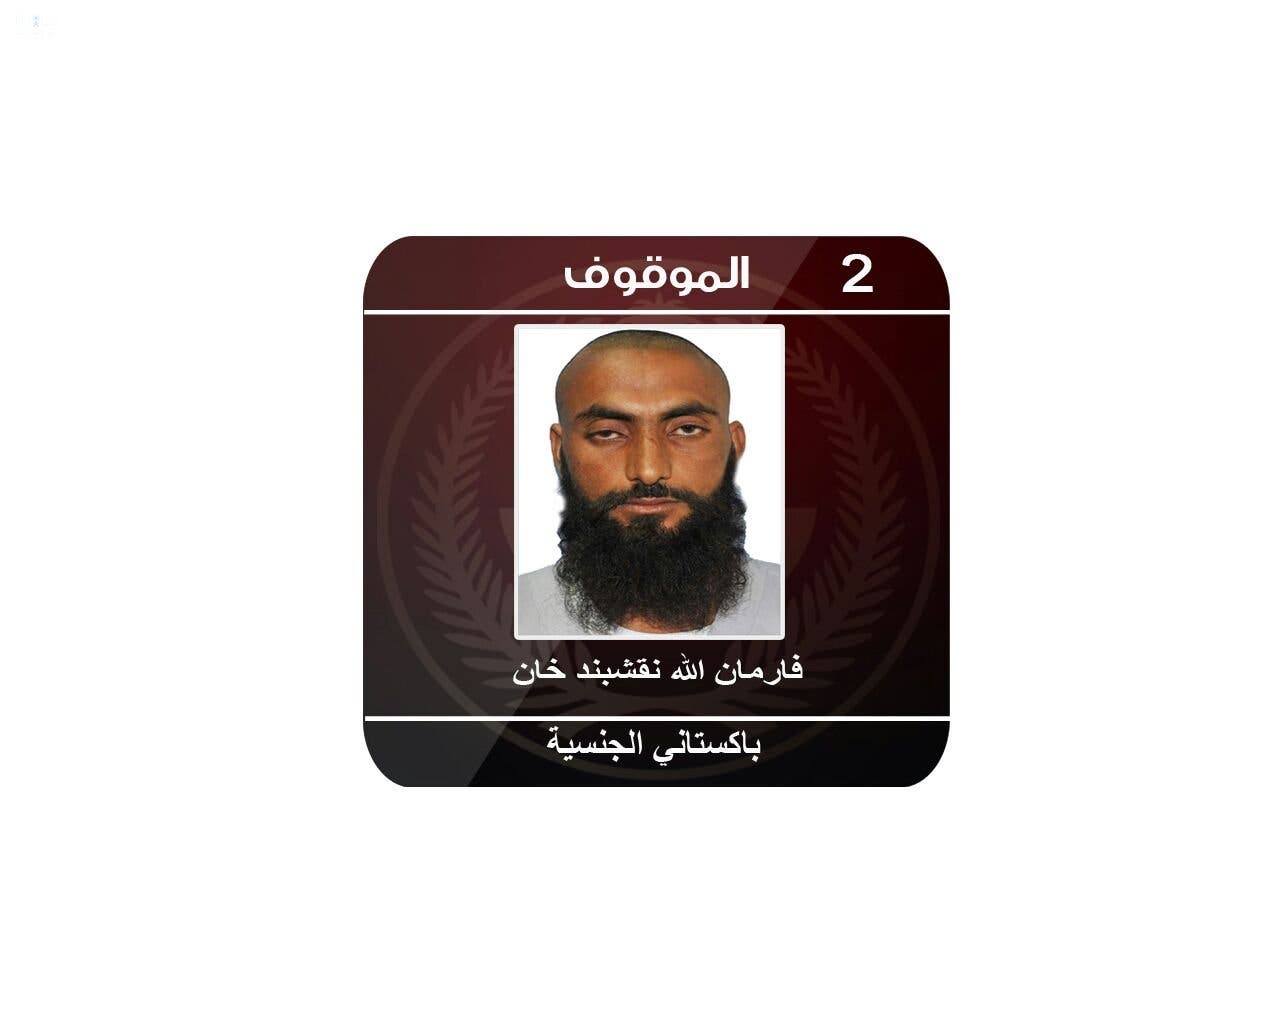 السعودية : إحباط عملية إرهابية تستهدف ملعب الجوهرة بجدة 5d328557-a3b0-45c0-a8c6-090a2968ad09